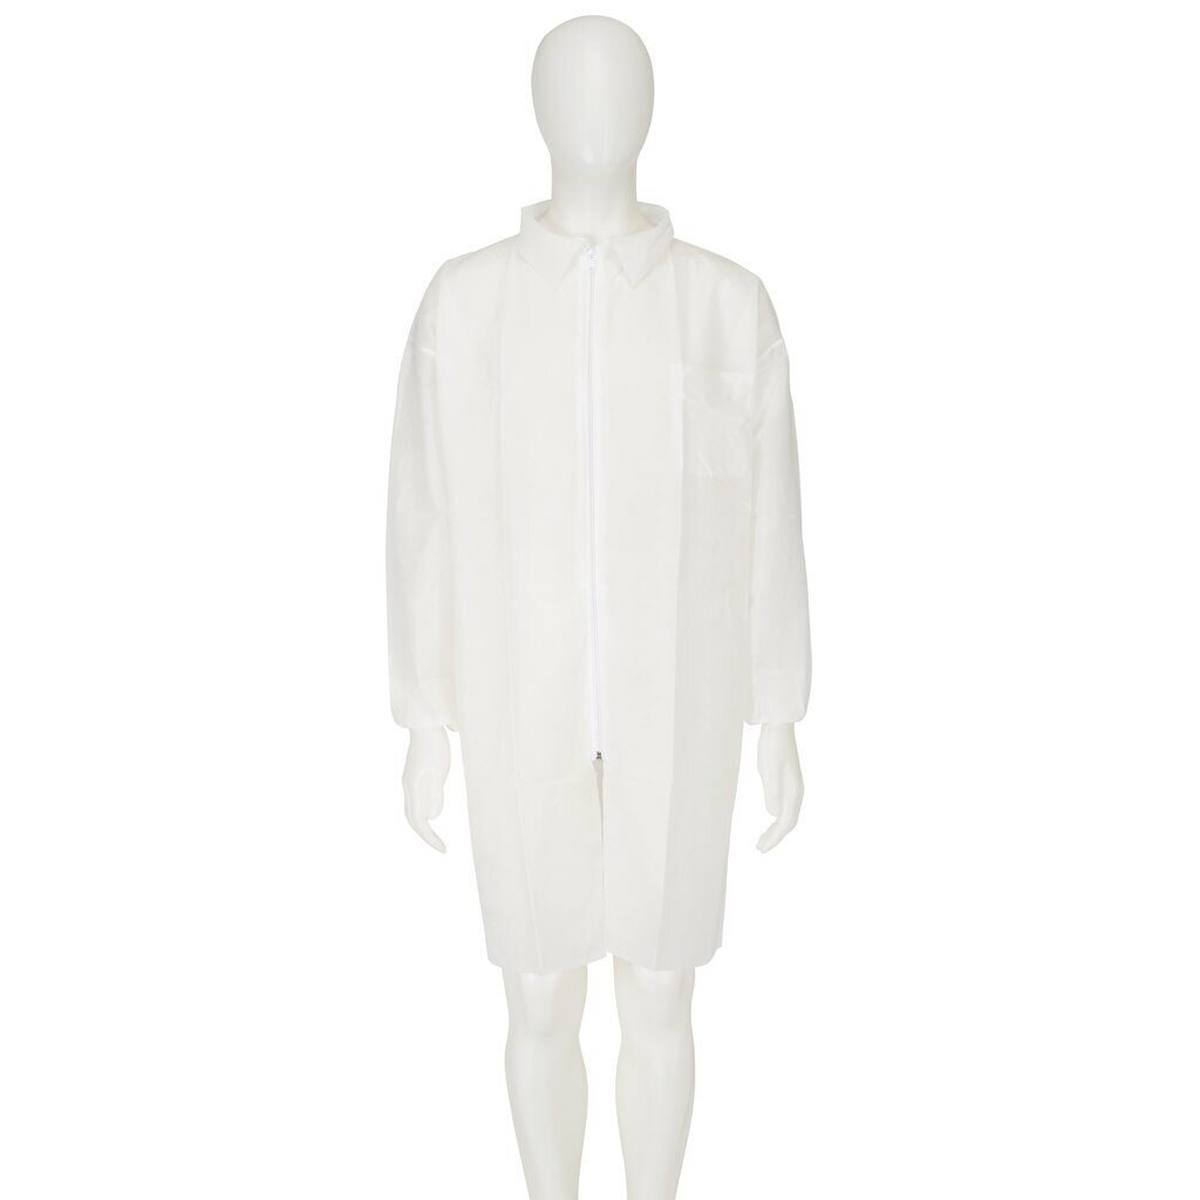 3M 4400 Abrigo, blanco, talla L, material 100% polipropileno, transpirable, muy ligero, con cierre de cremallera